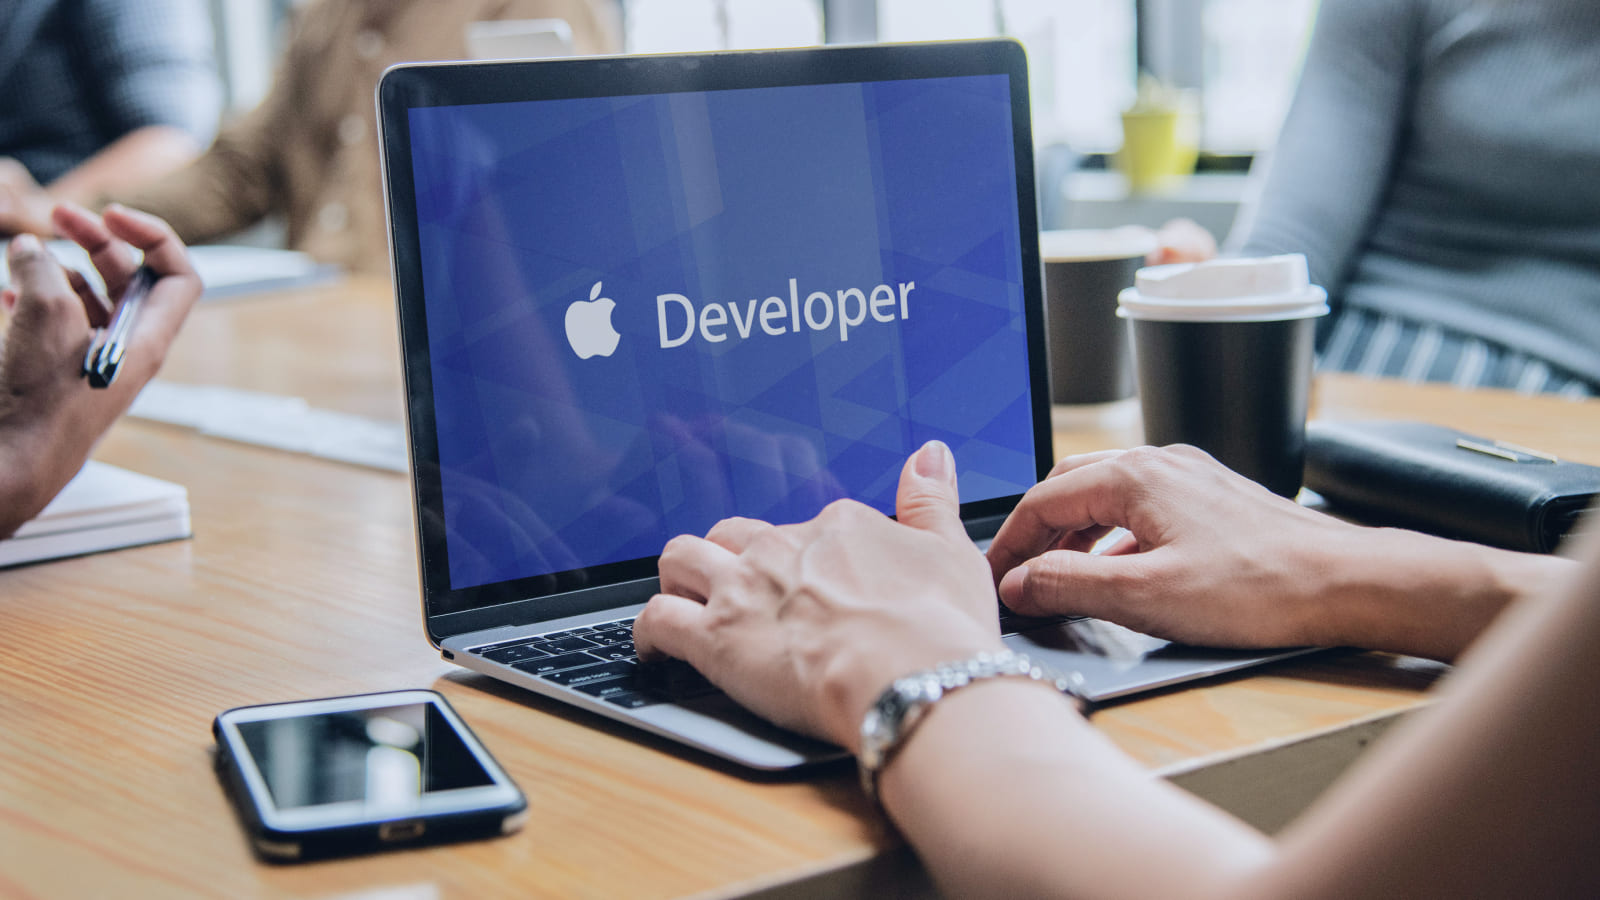 Для работы с App Store в качестве предпринимателя необходимо зарегистрировать аккаунт в Apple Developer